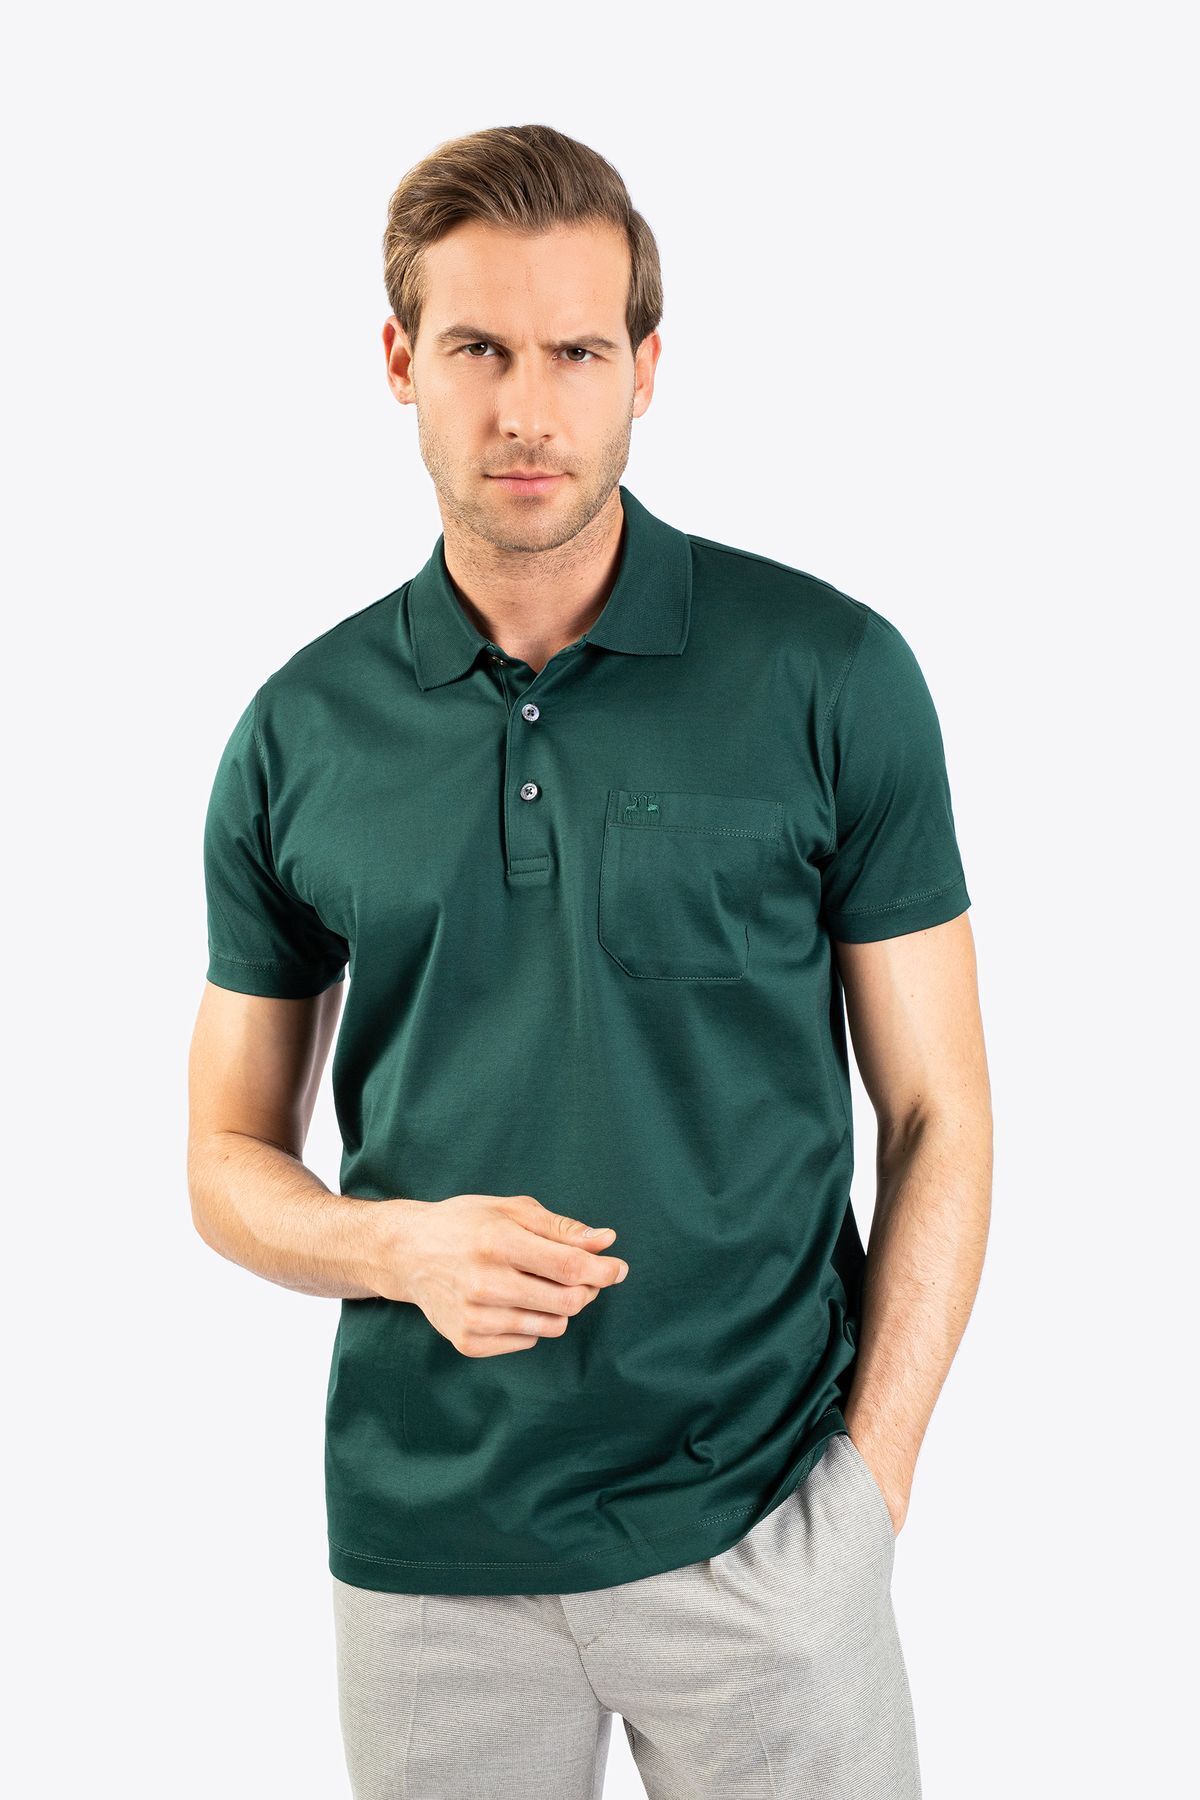 Karaca Erkek Büyük Beden Polo Yaka Tişört-Koyu Yeşil